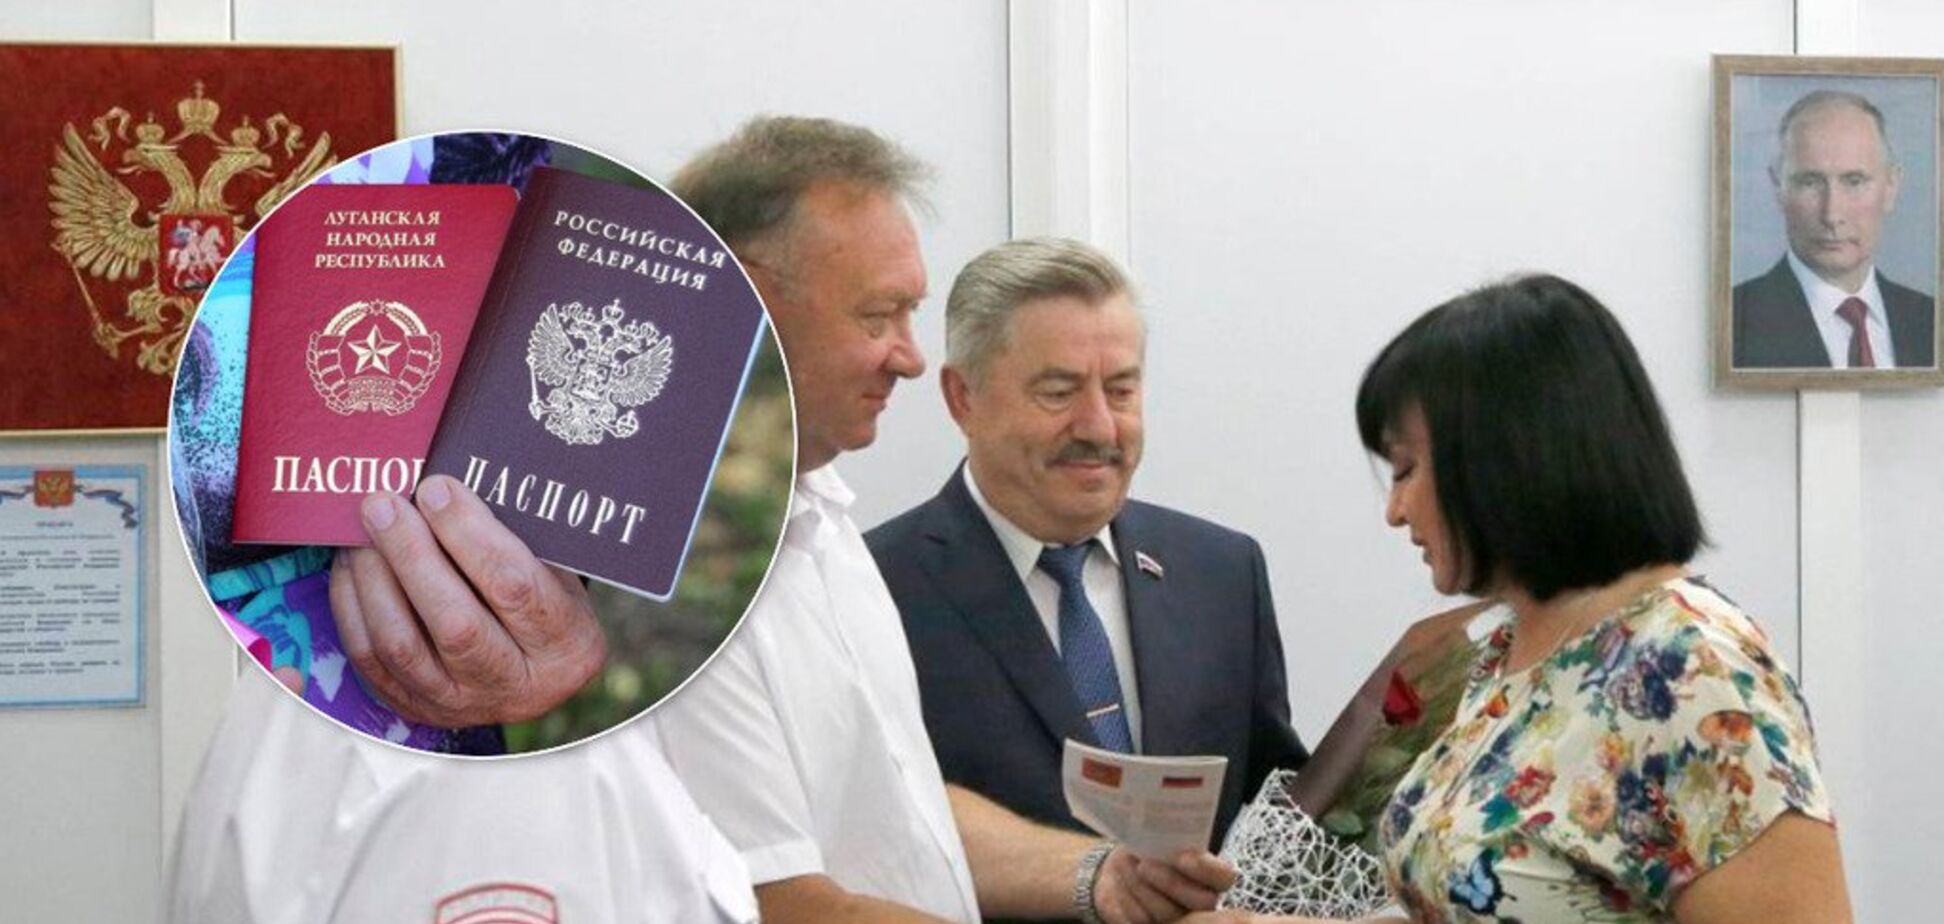 'Предателей нигде не любят': Россия выдала первые паспорта жителям Донбасса